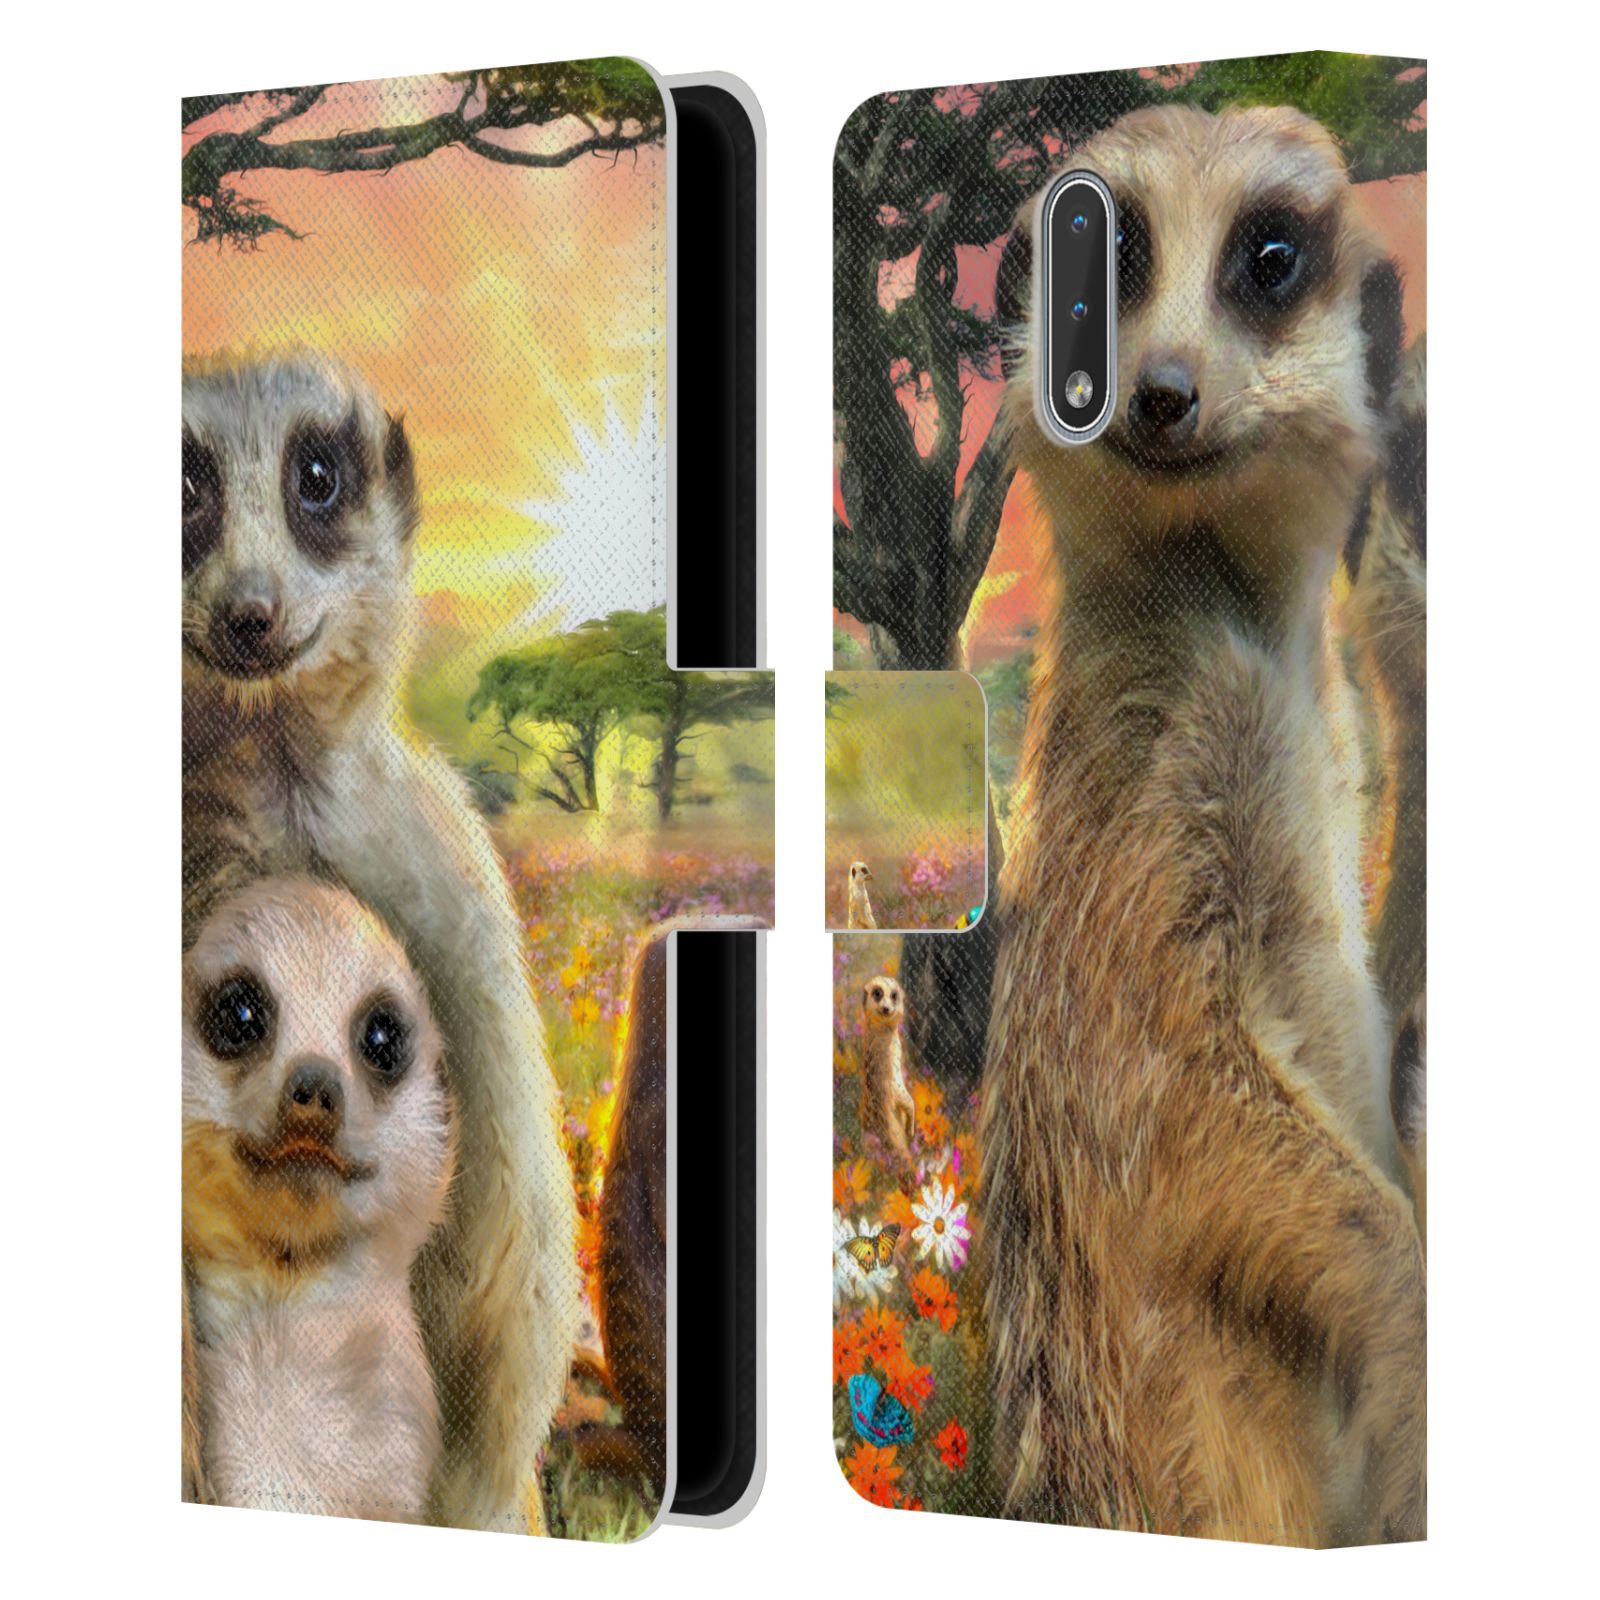 Pouzdro HEAD CASE na mobil Nokia 2.3  malé surikaty